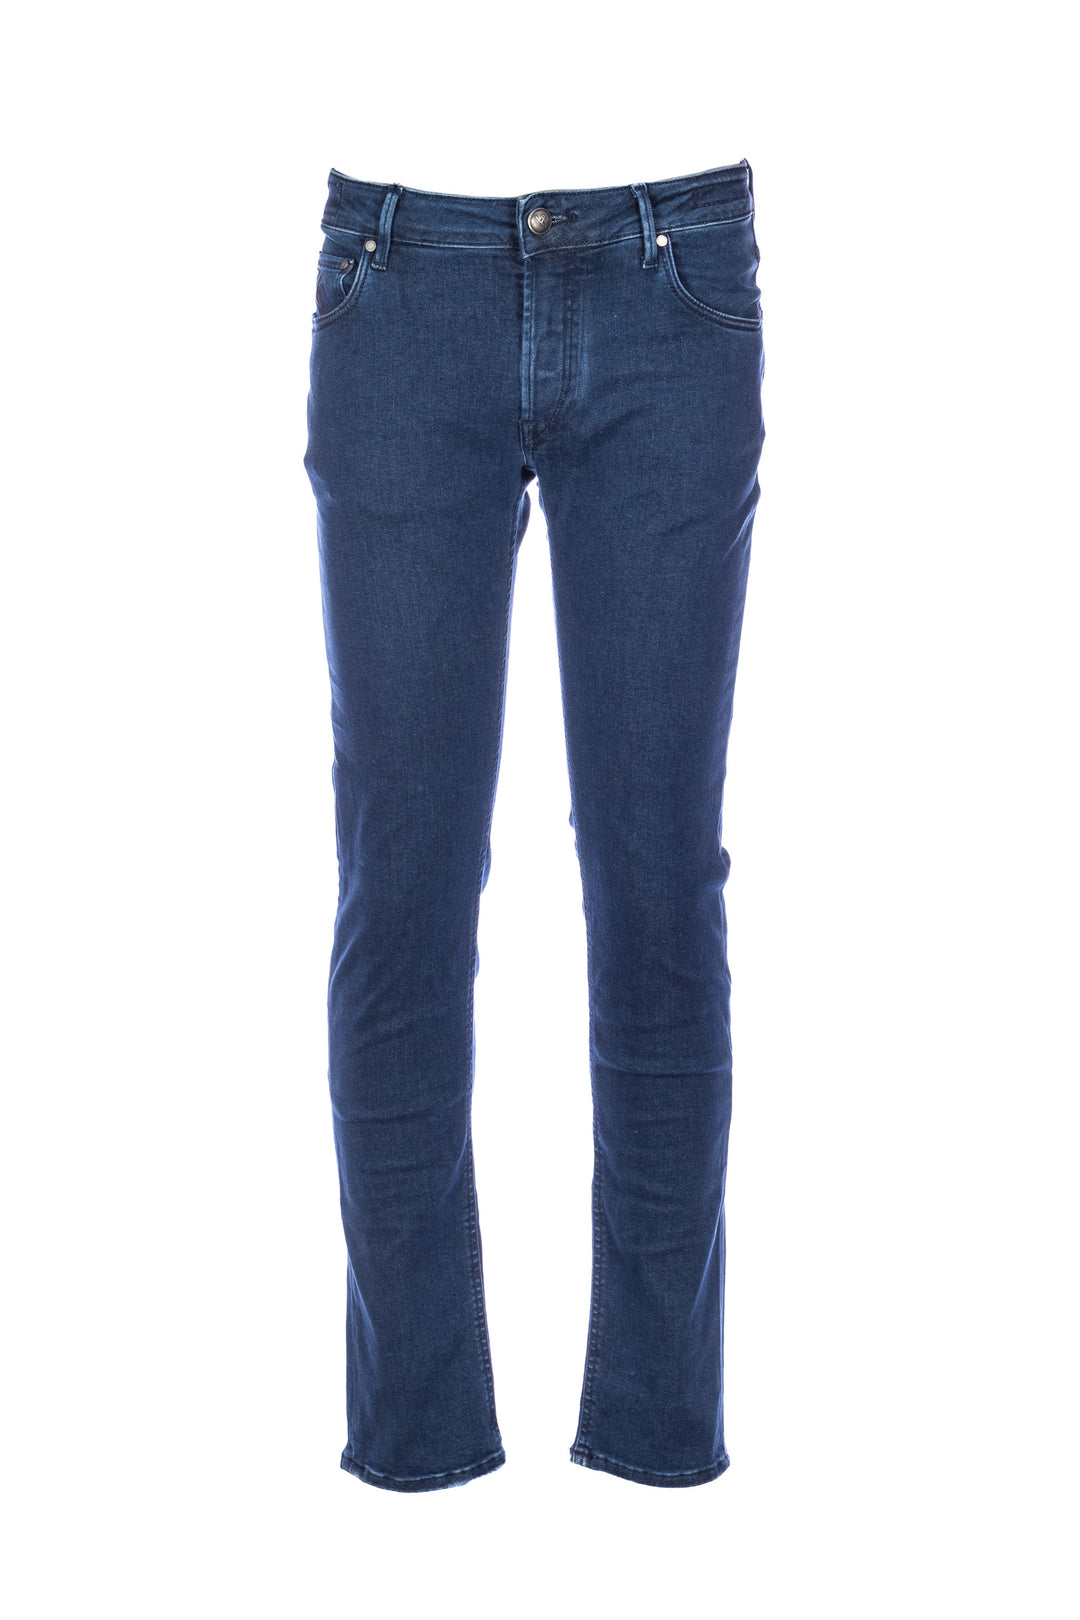 HANDPICKED Jeans 5 tasche “ORVIETO” in denim elasticizzato - Mancinelli 1954